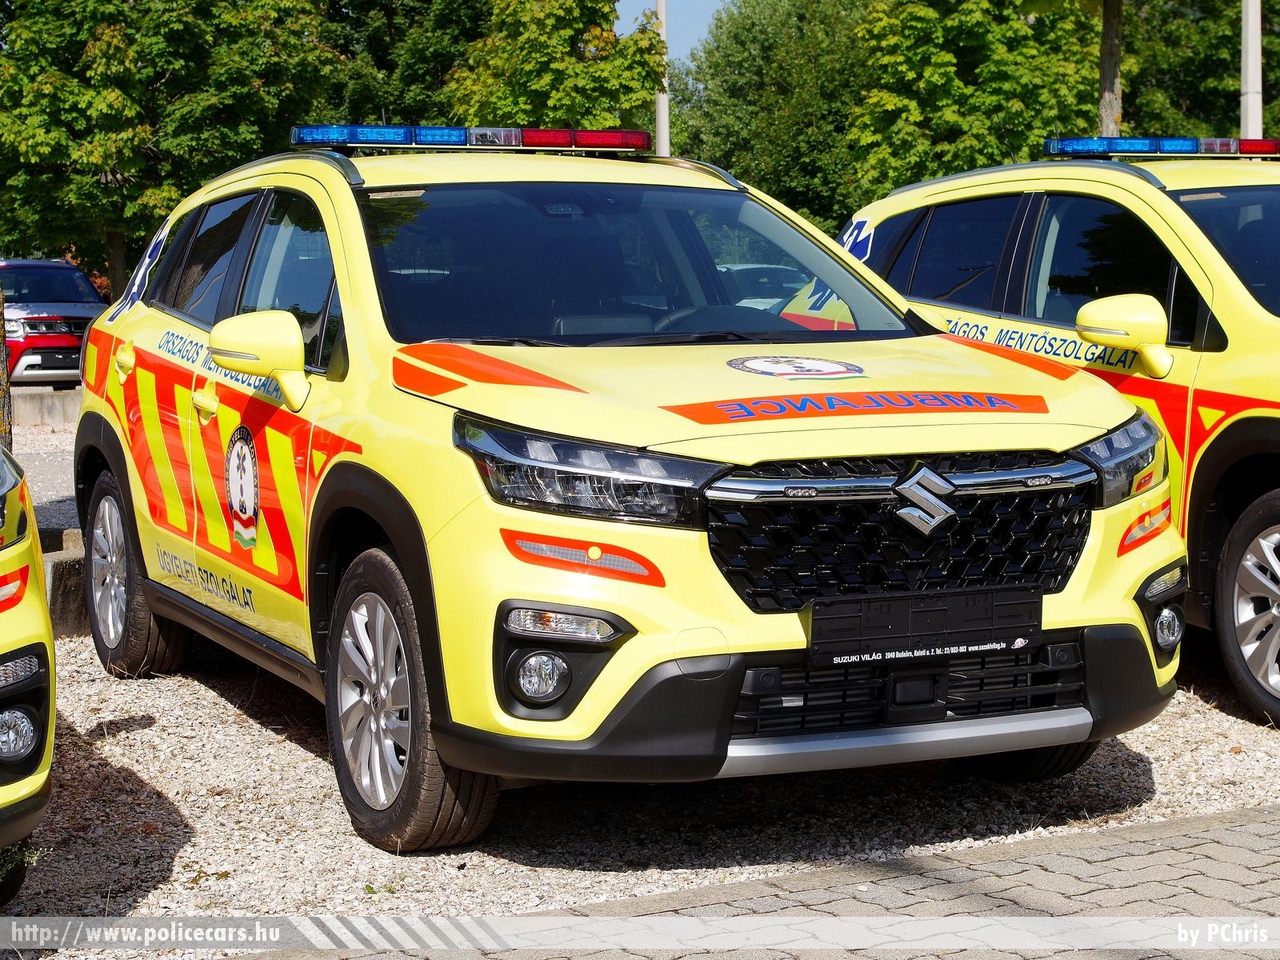 Suzuki S-Cross, Országos Mentőszolgálat, orvosi ügyelet, fotó: PChris
Keywords: mentő magyar Magyarország mentőautó OMSZ ambulance Hungary hungarian